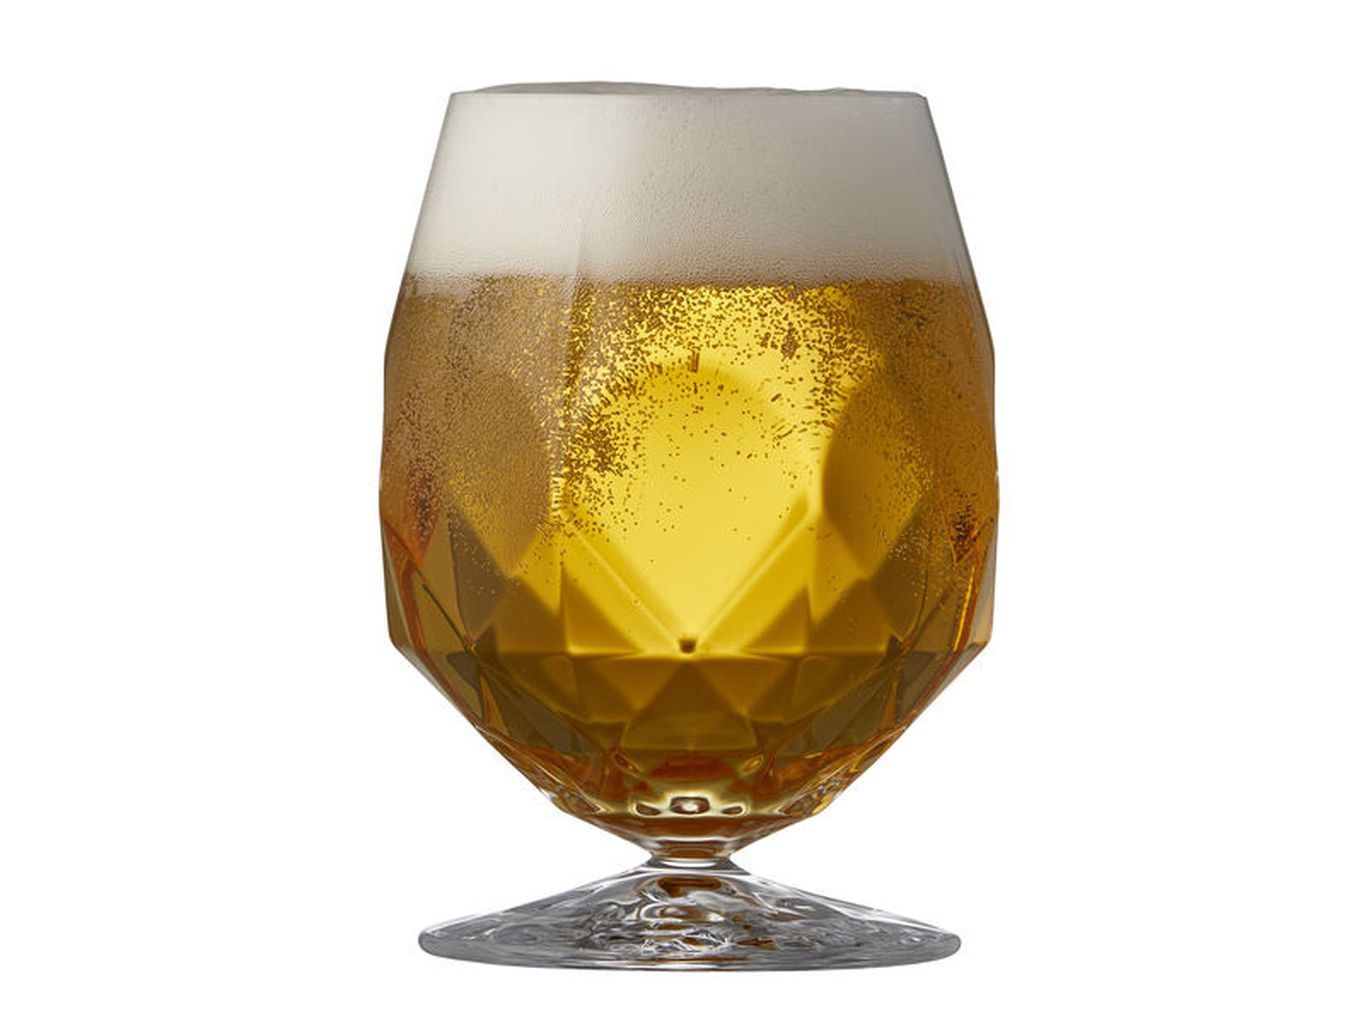 Lyngby Glas Alkemist Krystal Beer Glass 53 Cl, 2 Pcs.